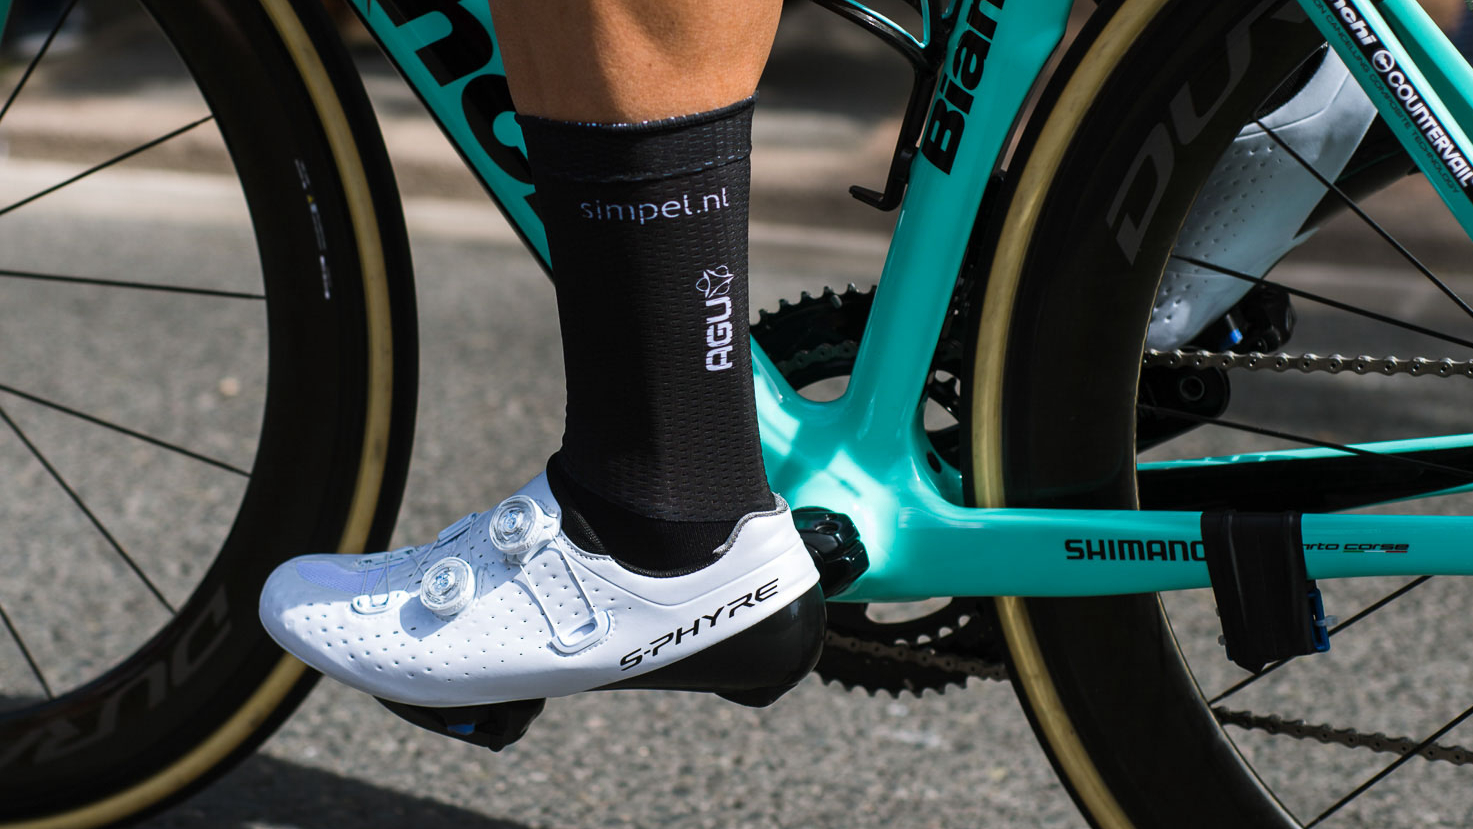 2019-Tour-de-France-shoes-of-the-peloton-3.jpg